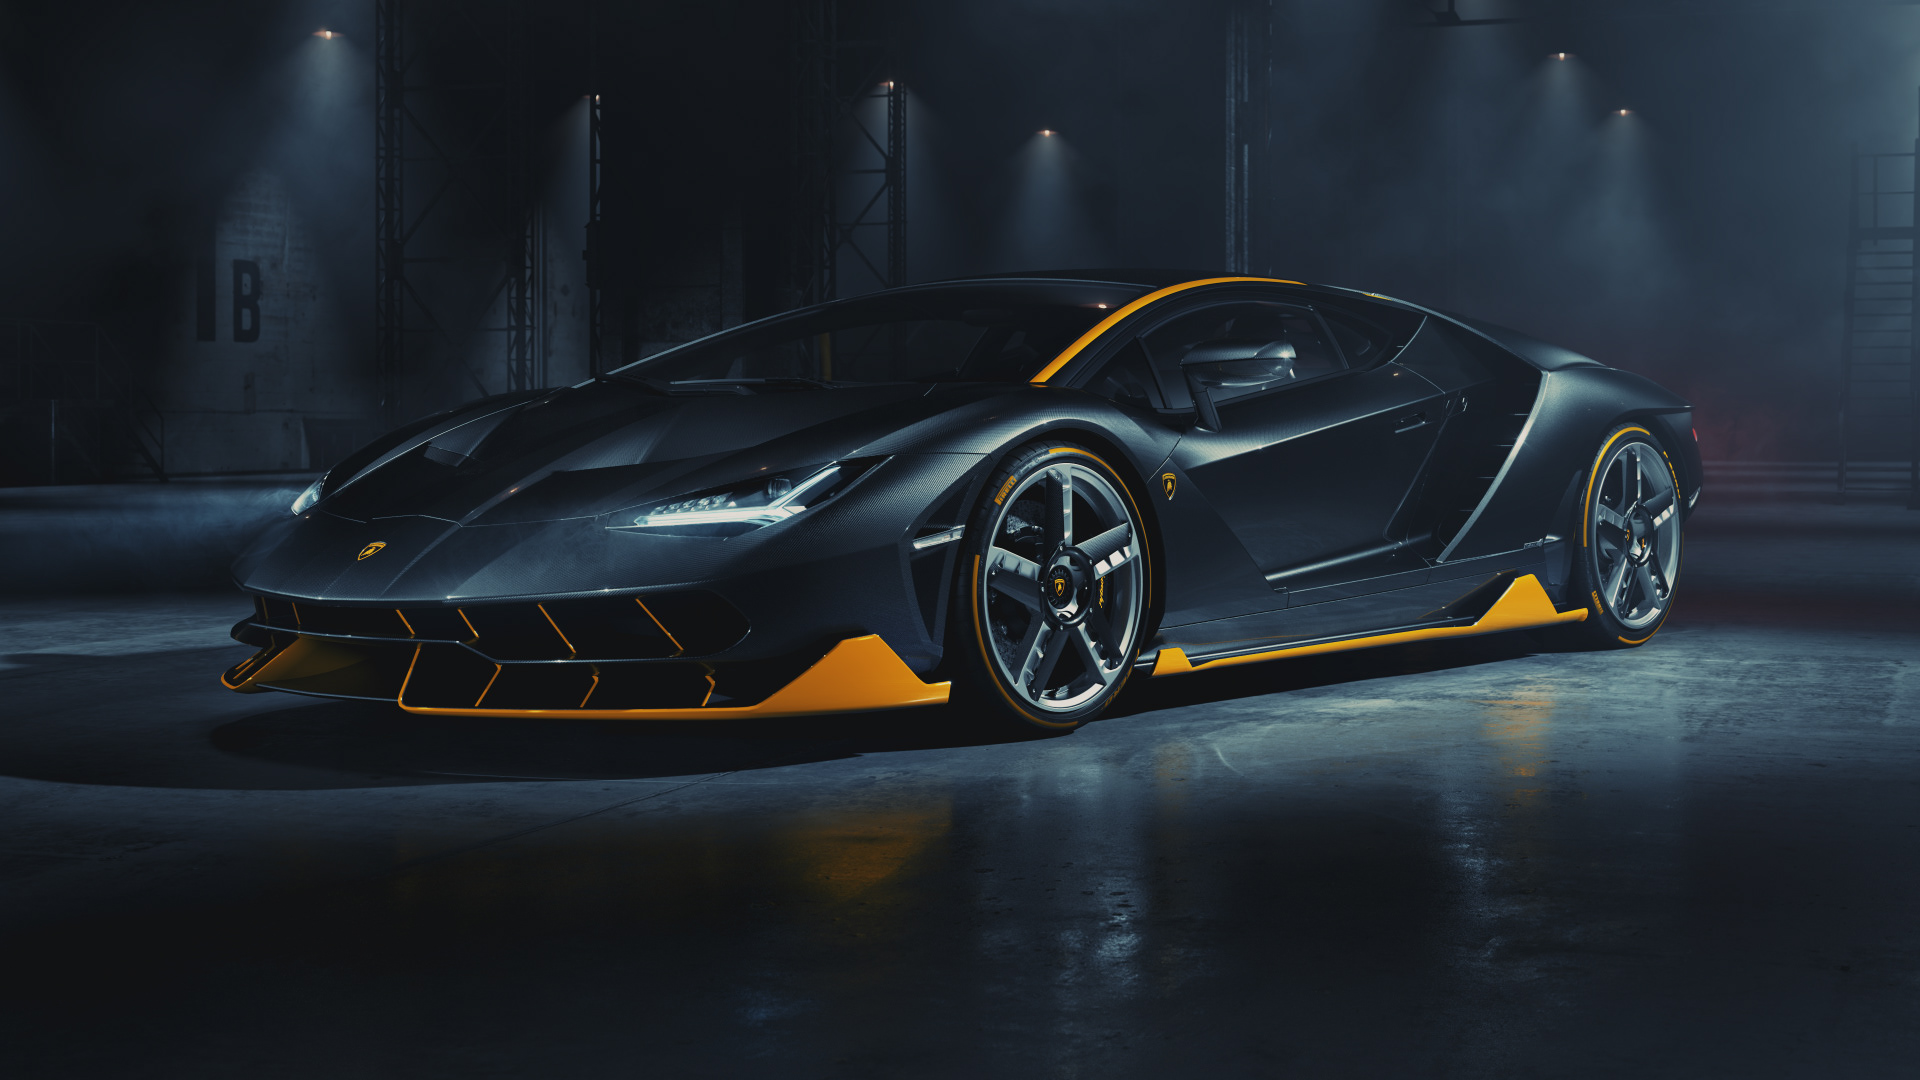 Lamborghini Centenario \u2013 Full CGI on Behance13ace191477621.5e32d3fdba10d.jpg